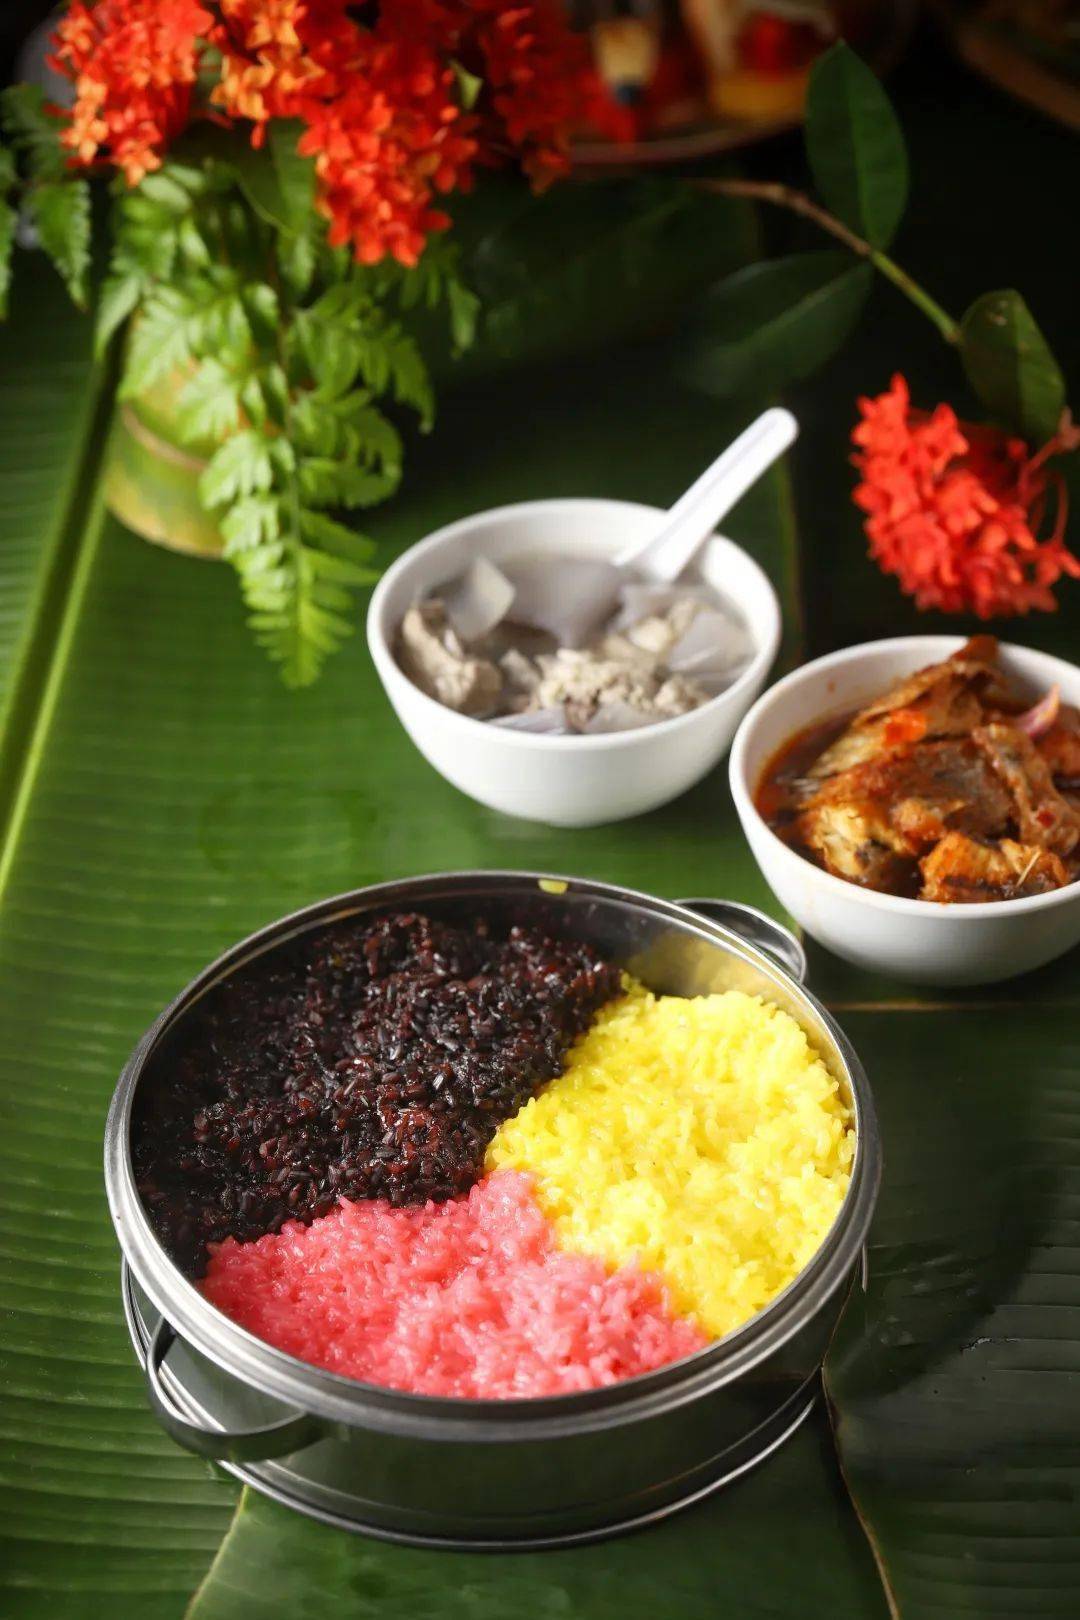 三色饭有红,黄,黑三色,分别取色于新鲜植物红蓝藤,黄姜和三角枫汁液